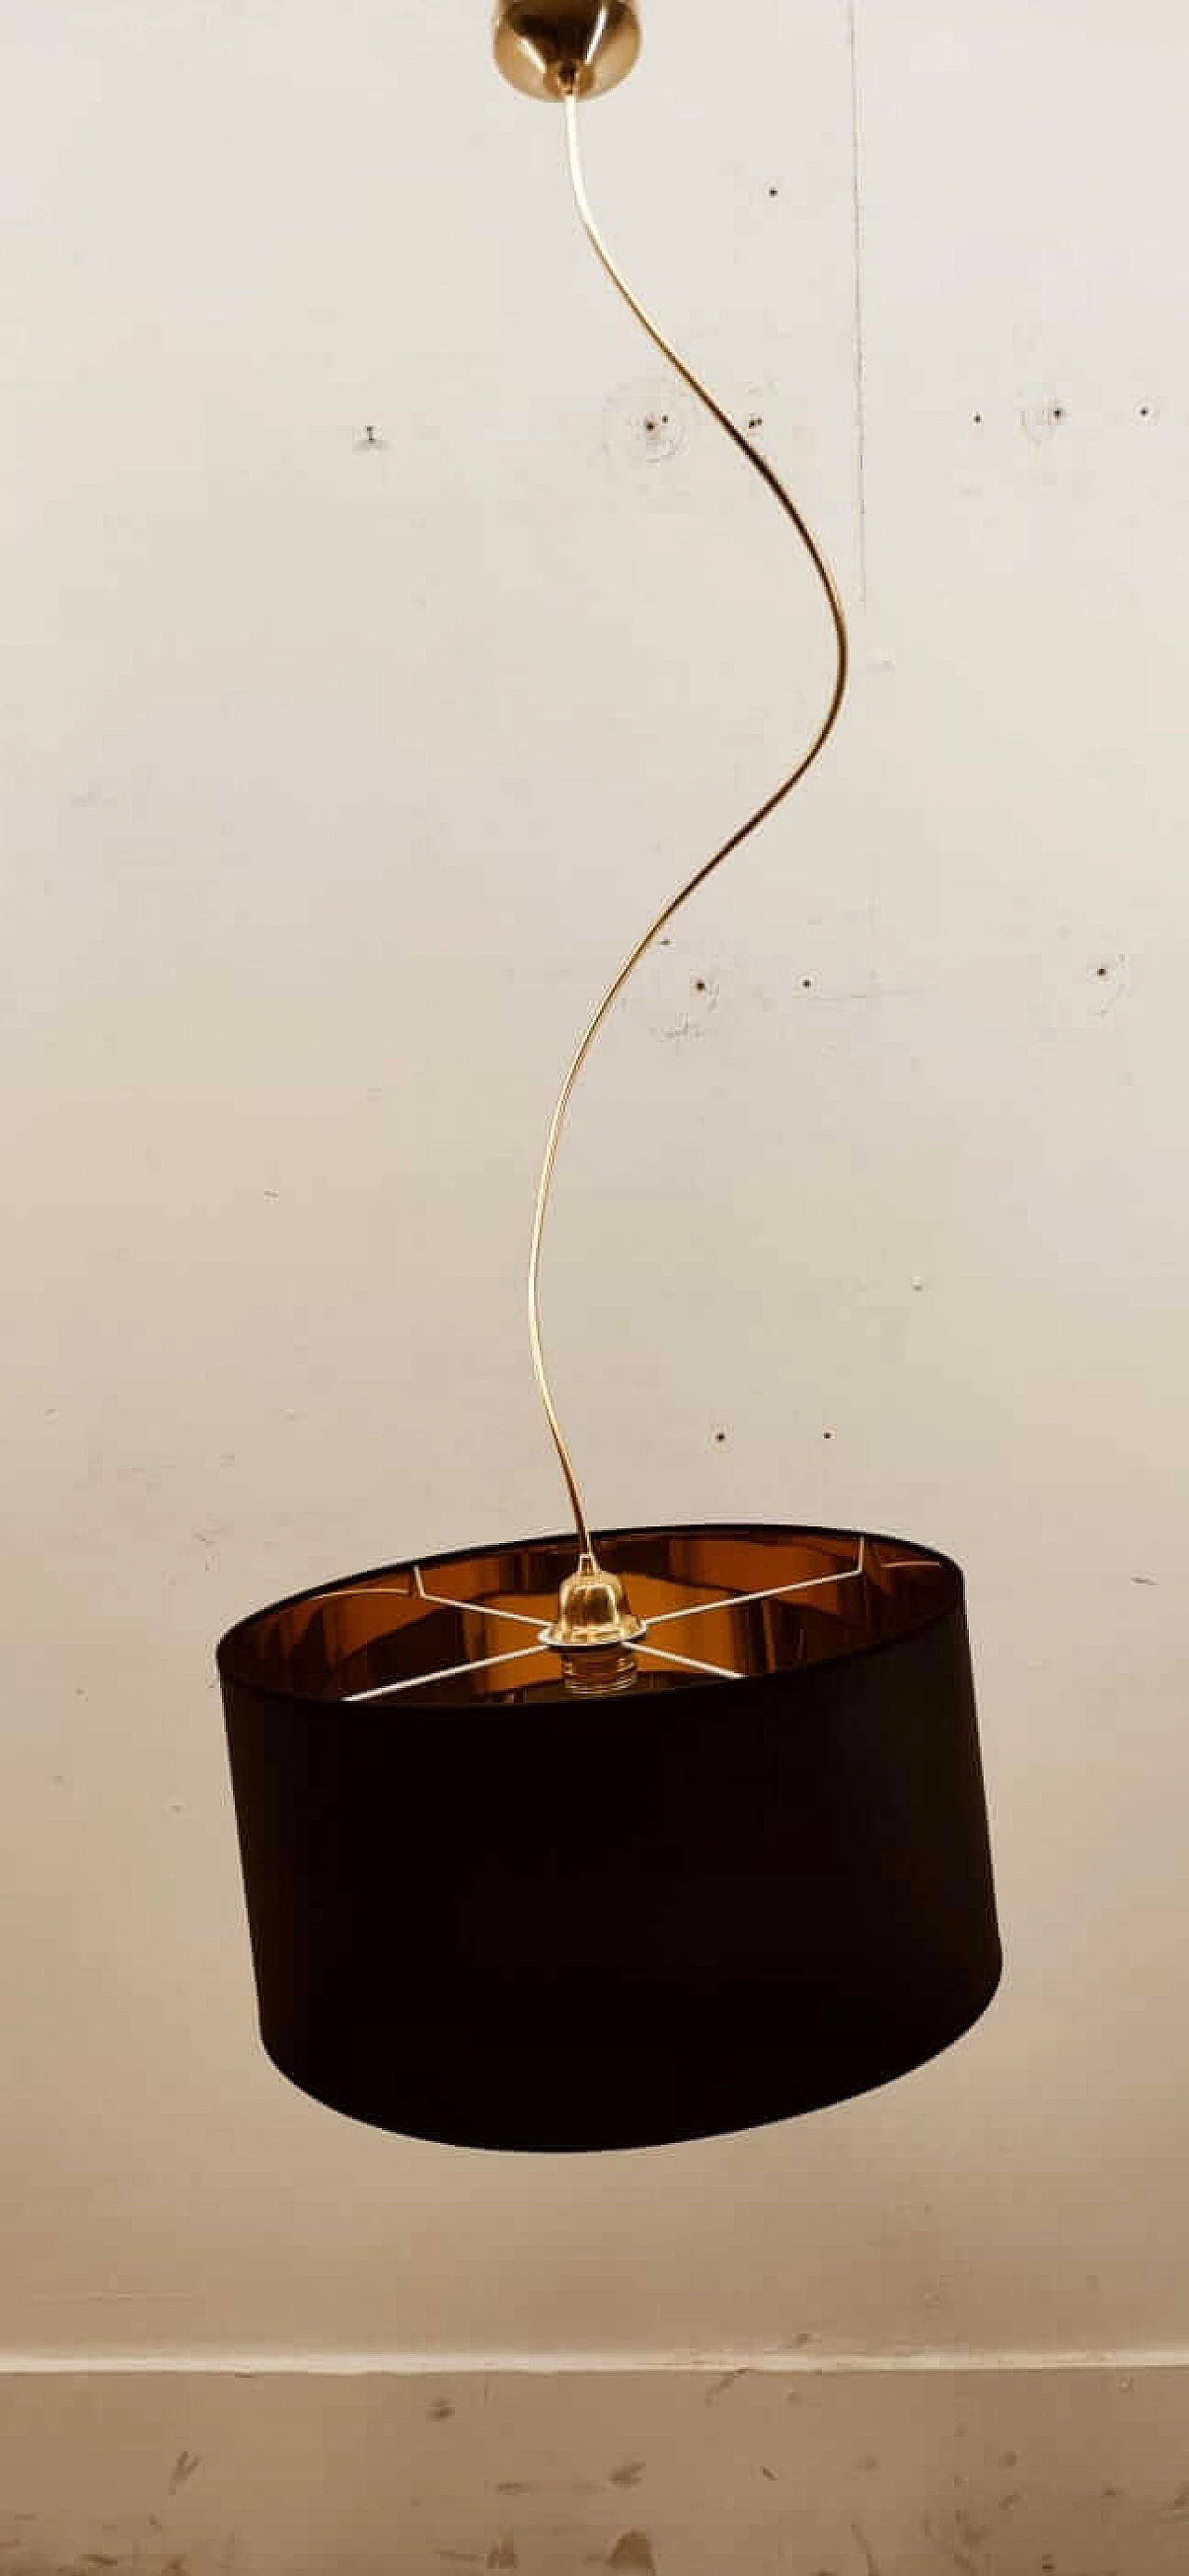 Lampada a sospensione con braccio regolabile nero e oro, anni '80 1377805